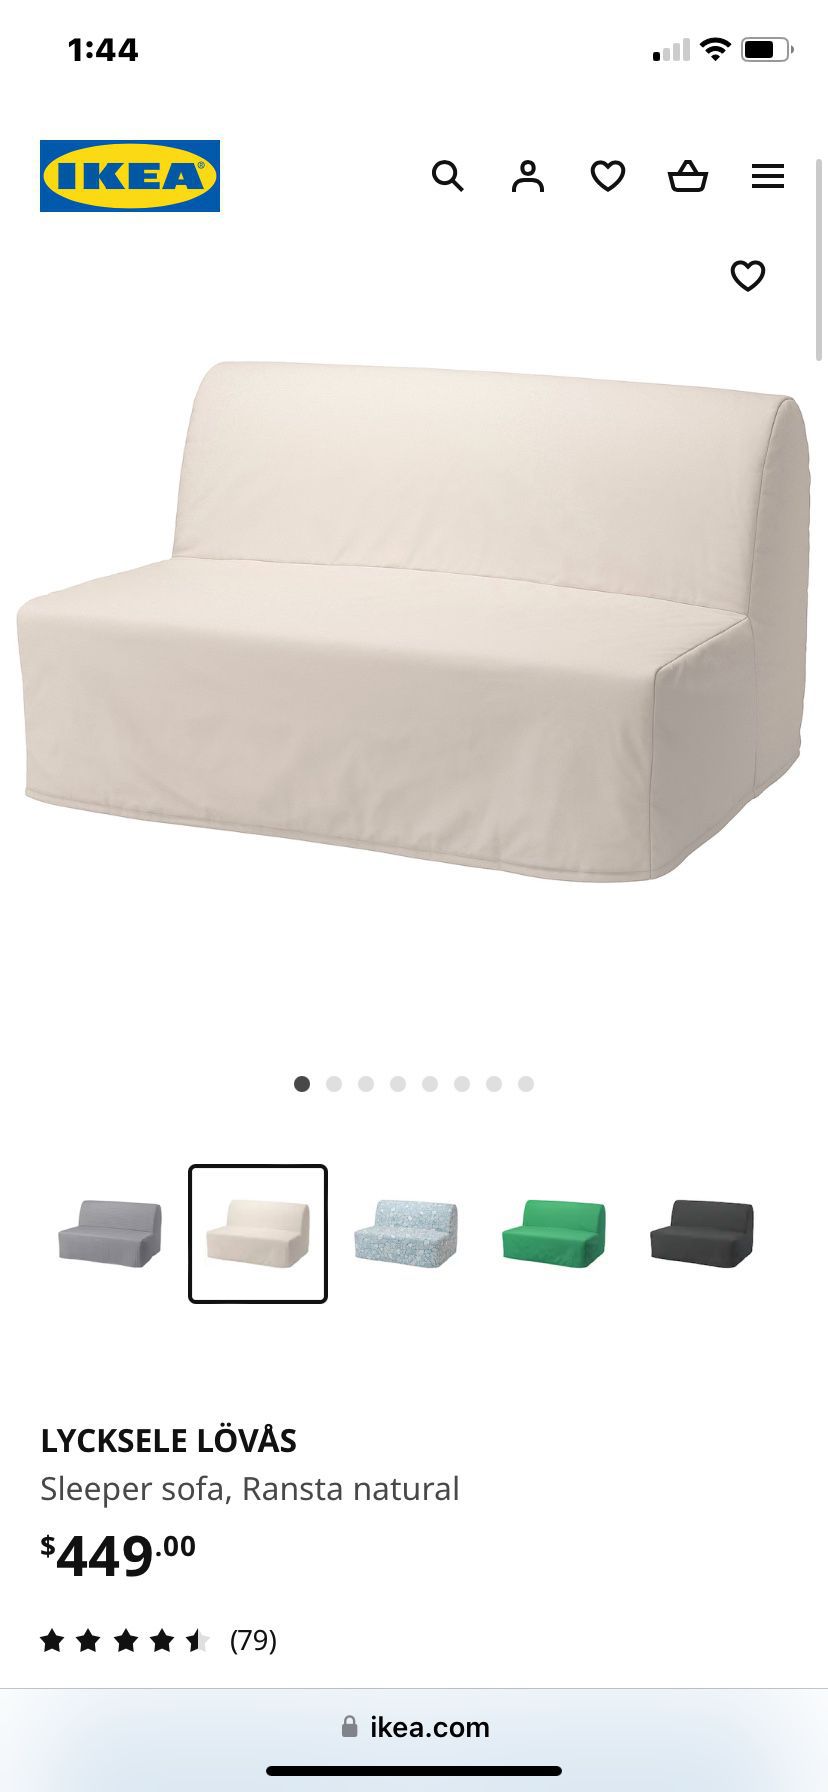 IKEA LYCKSELE LÖVÅS Sleeper sofa